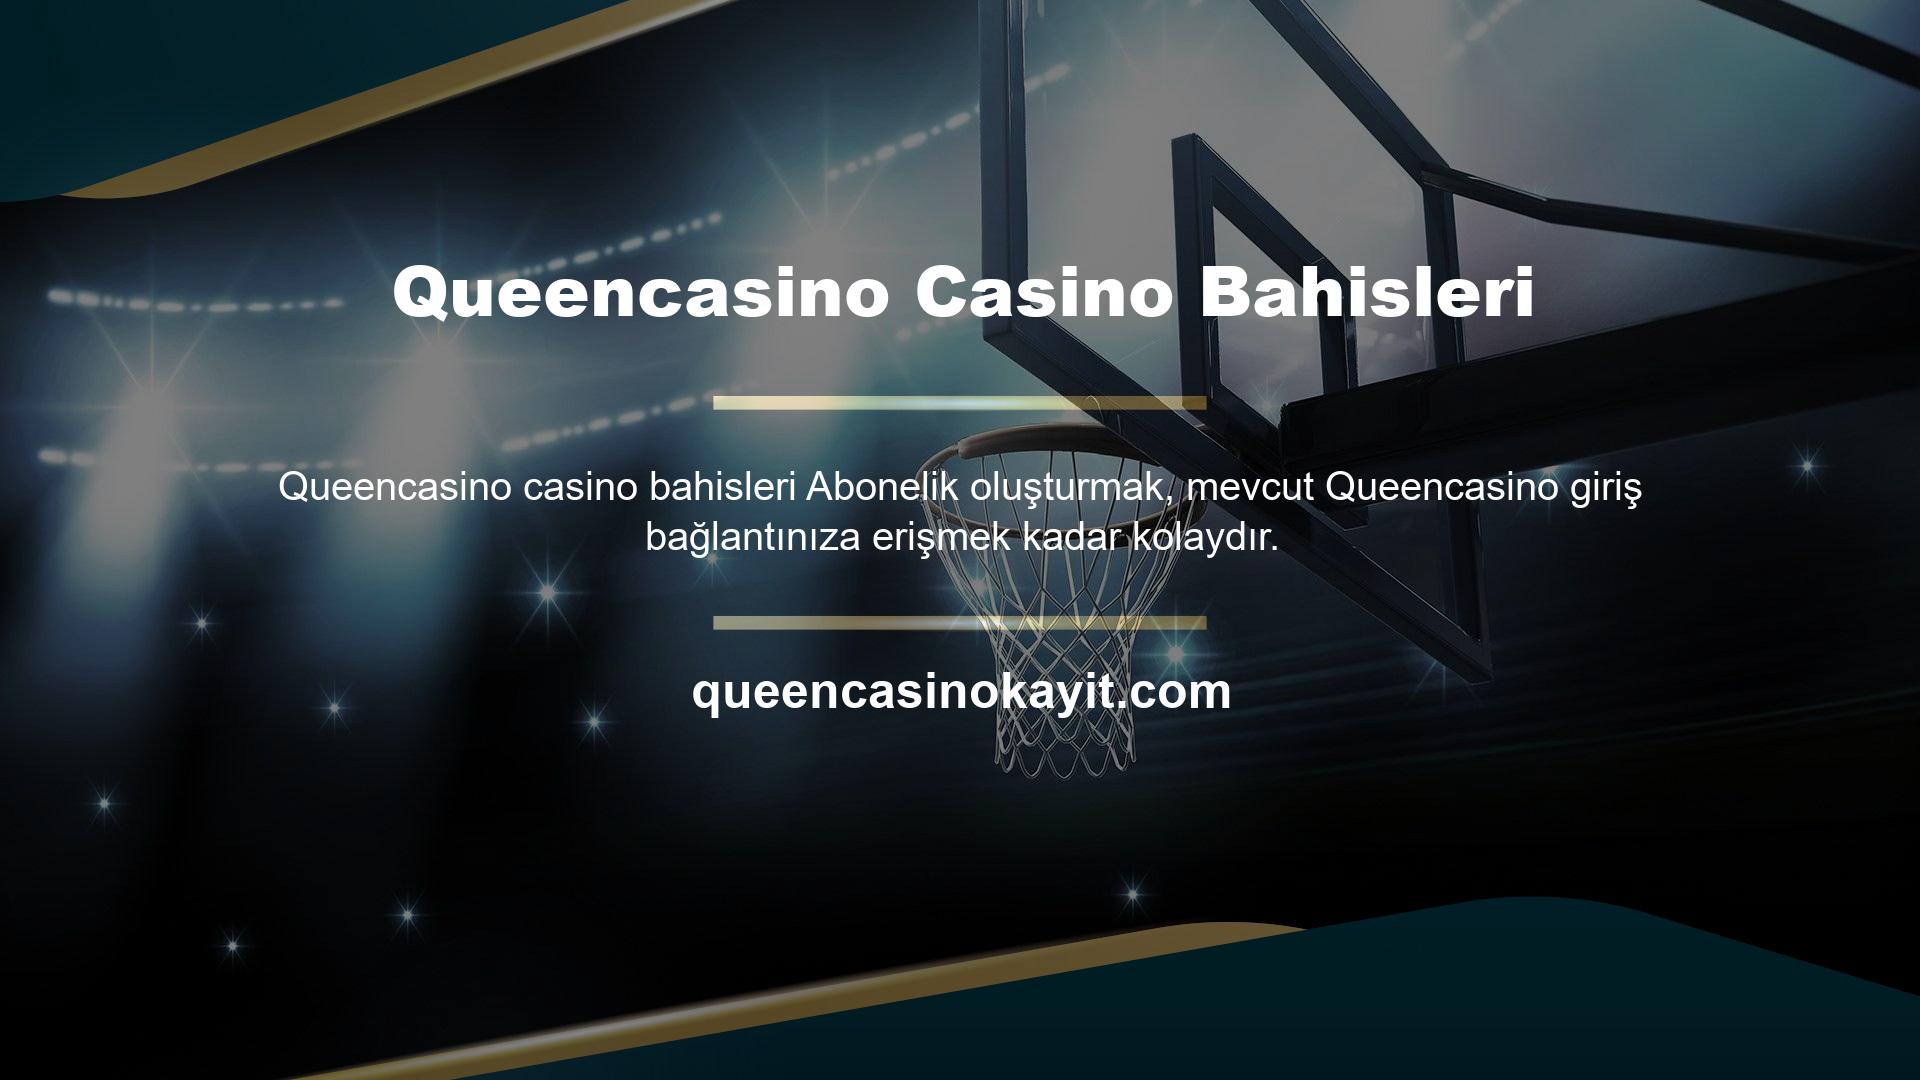 Queencasino Casino Bahisleri